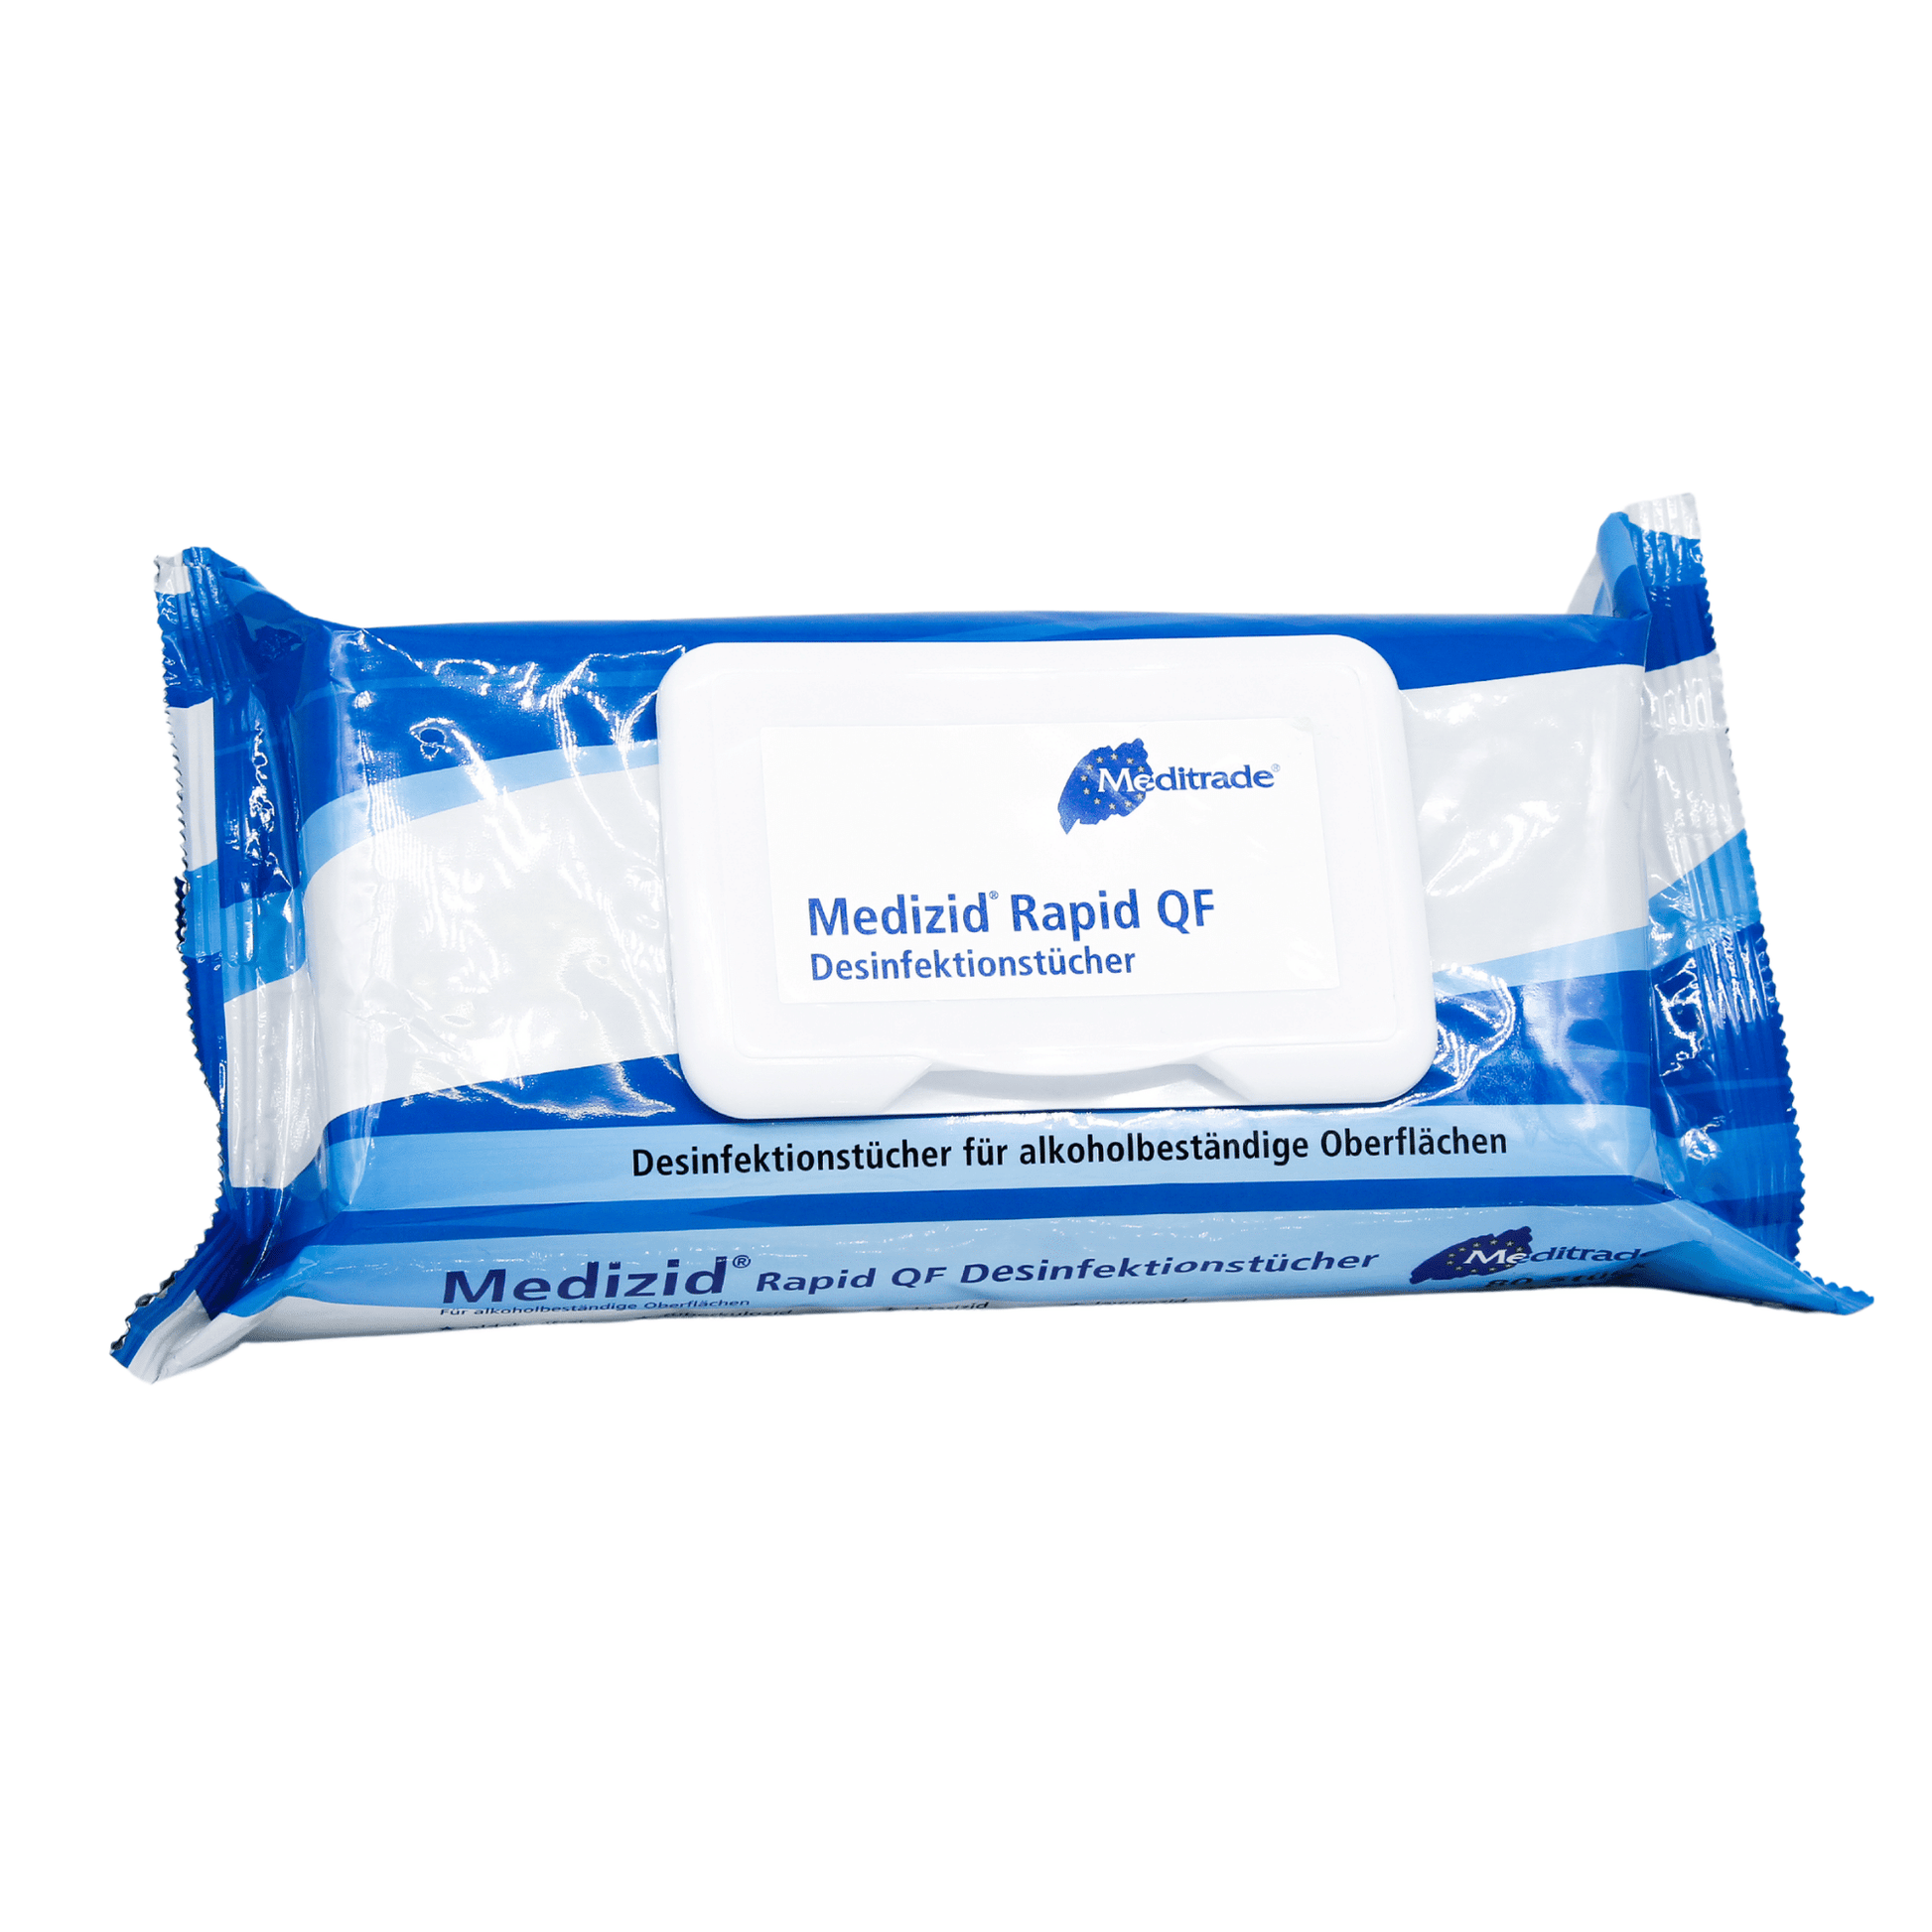 Ein verpacktes Meditrade Medizid® Rapid QF Flowpack Desinfektionstuch für alkoholbeständige Oberflächen, abgebildet vor einem weißen Hintergrund. Die Verpackung ist blau und weiß mit deutschem Text.